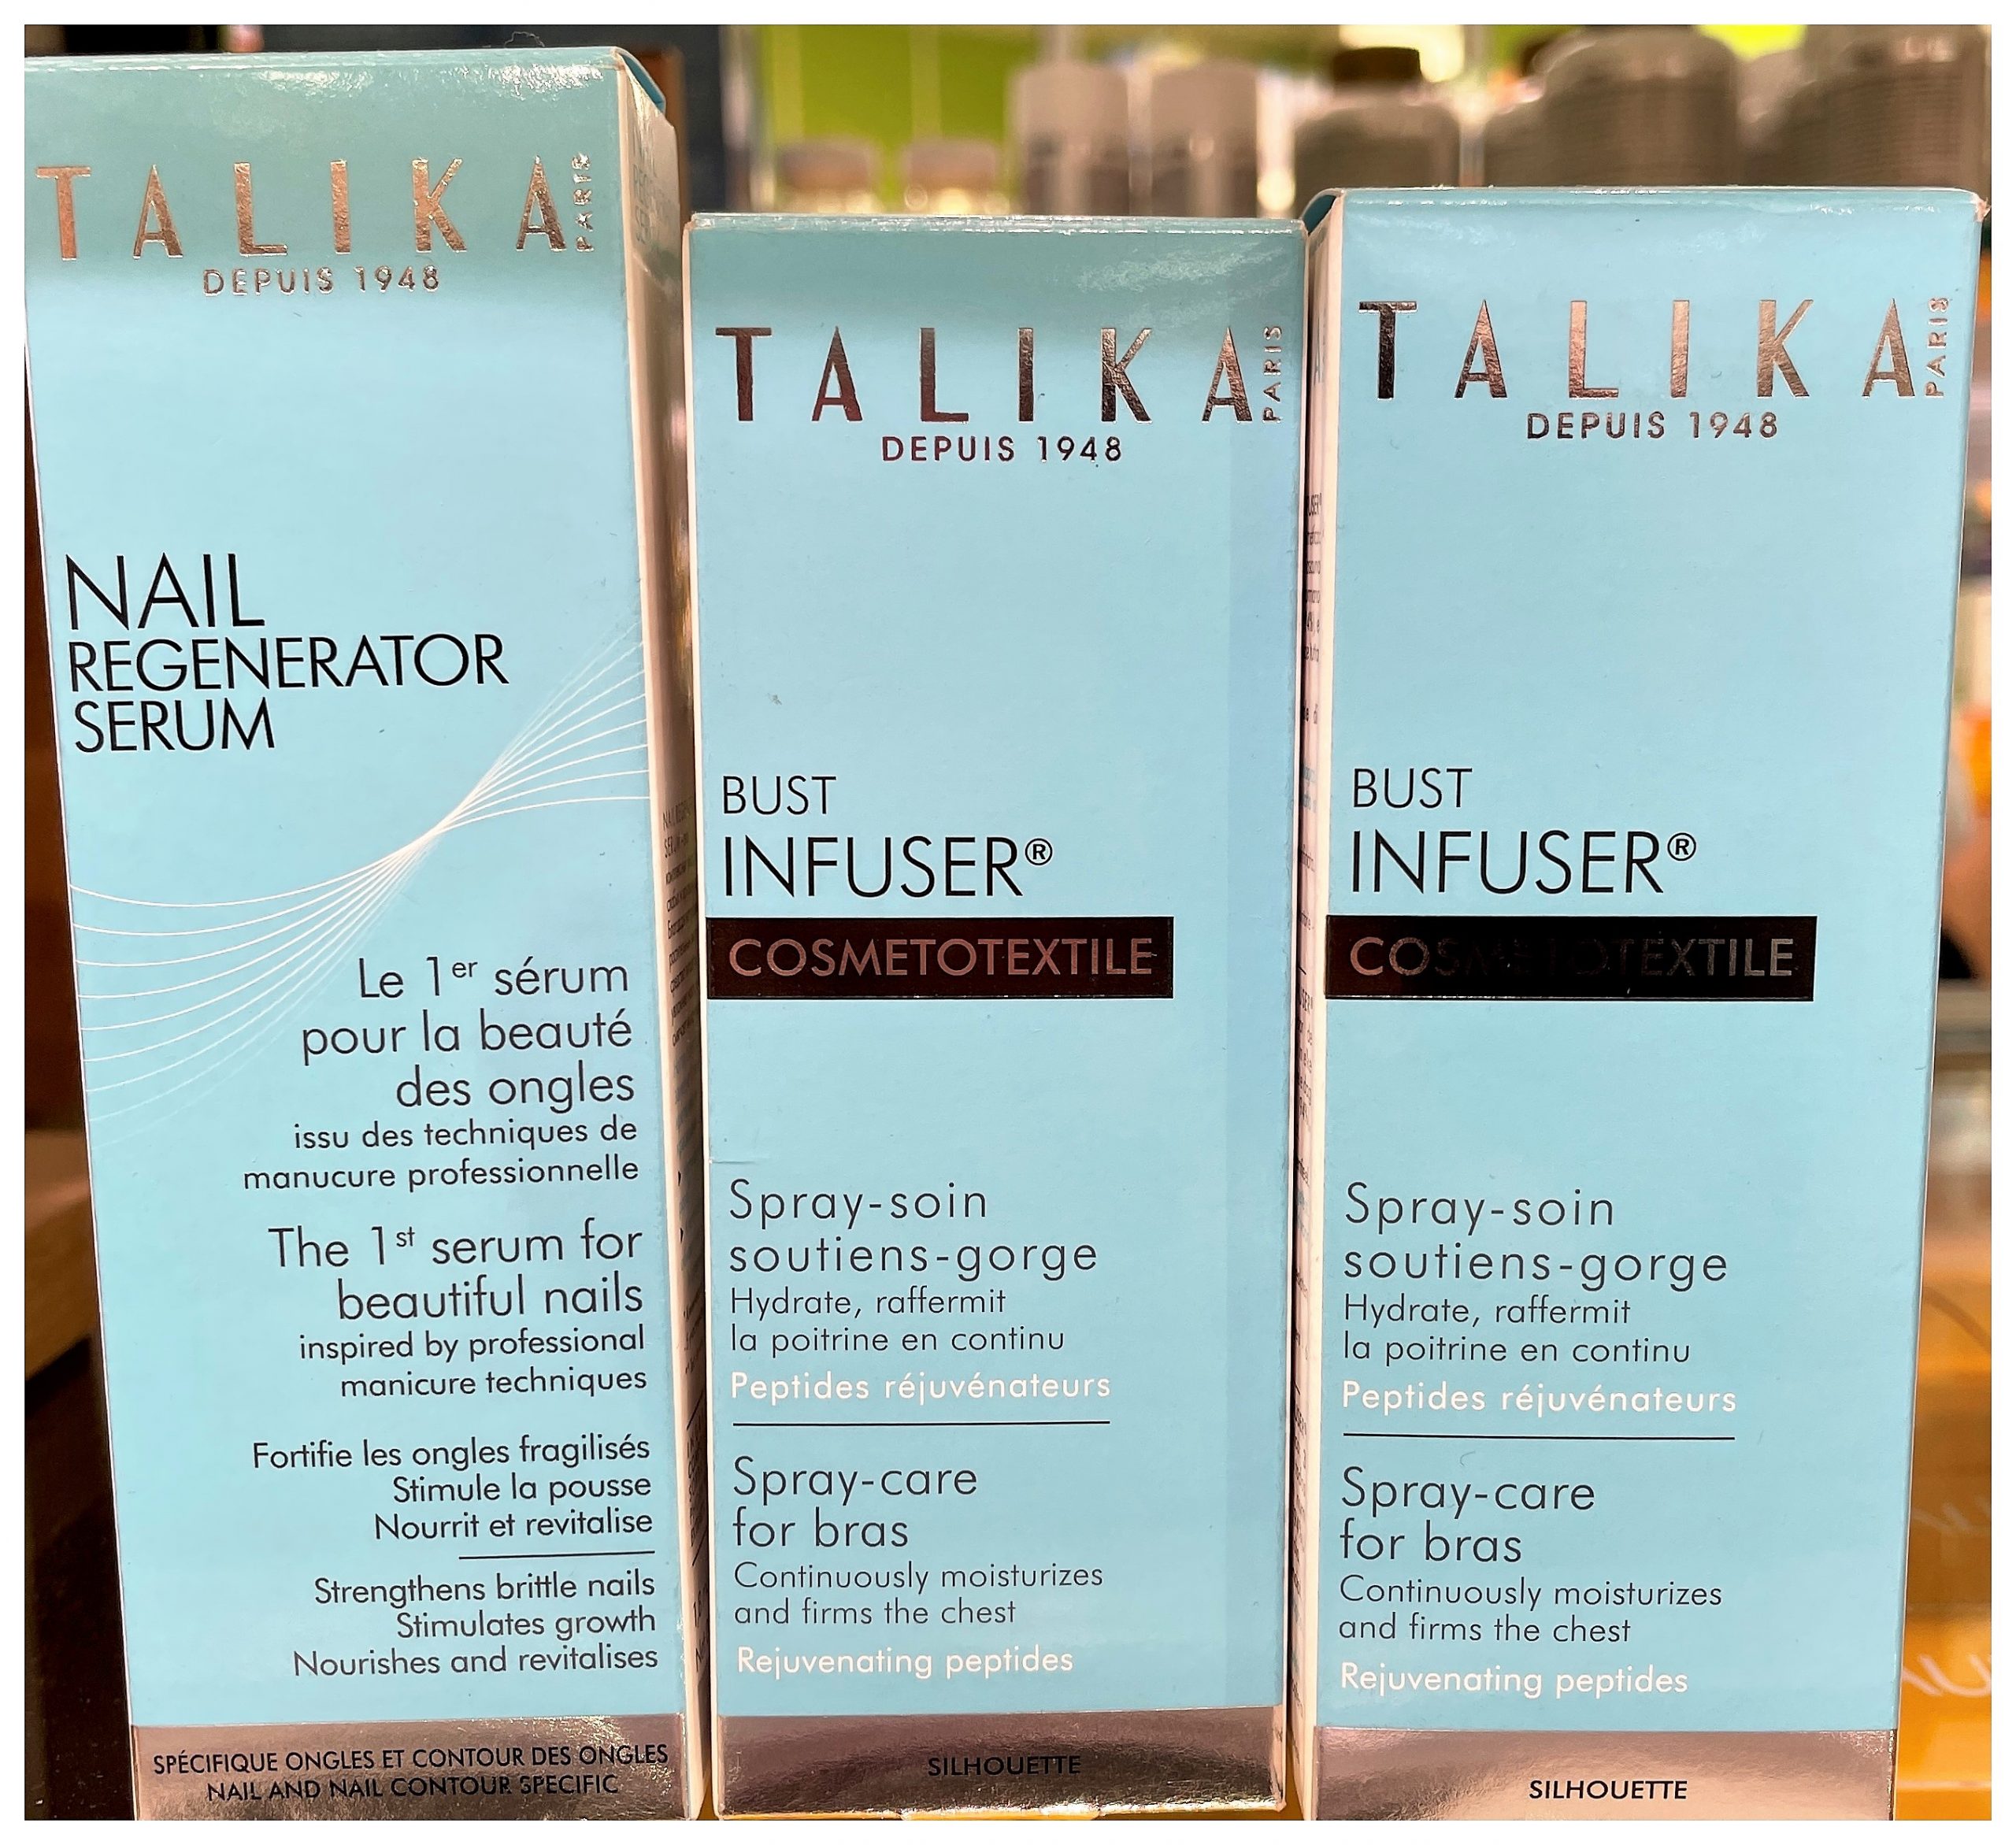 Talika Nail Regenerator Serum Barrita 1.8 Ml. El producto consiste en un serum regenerador de uñas